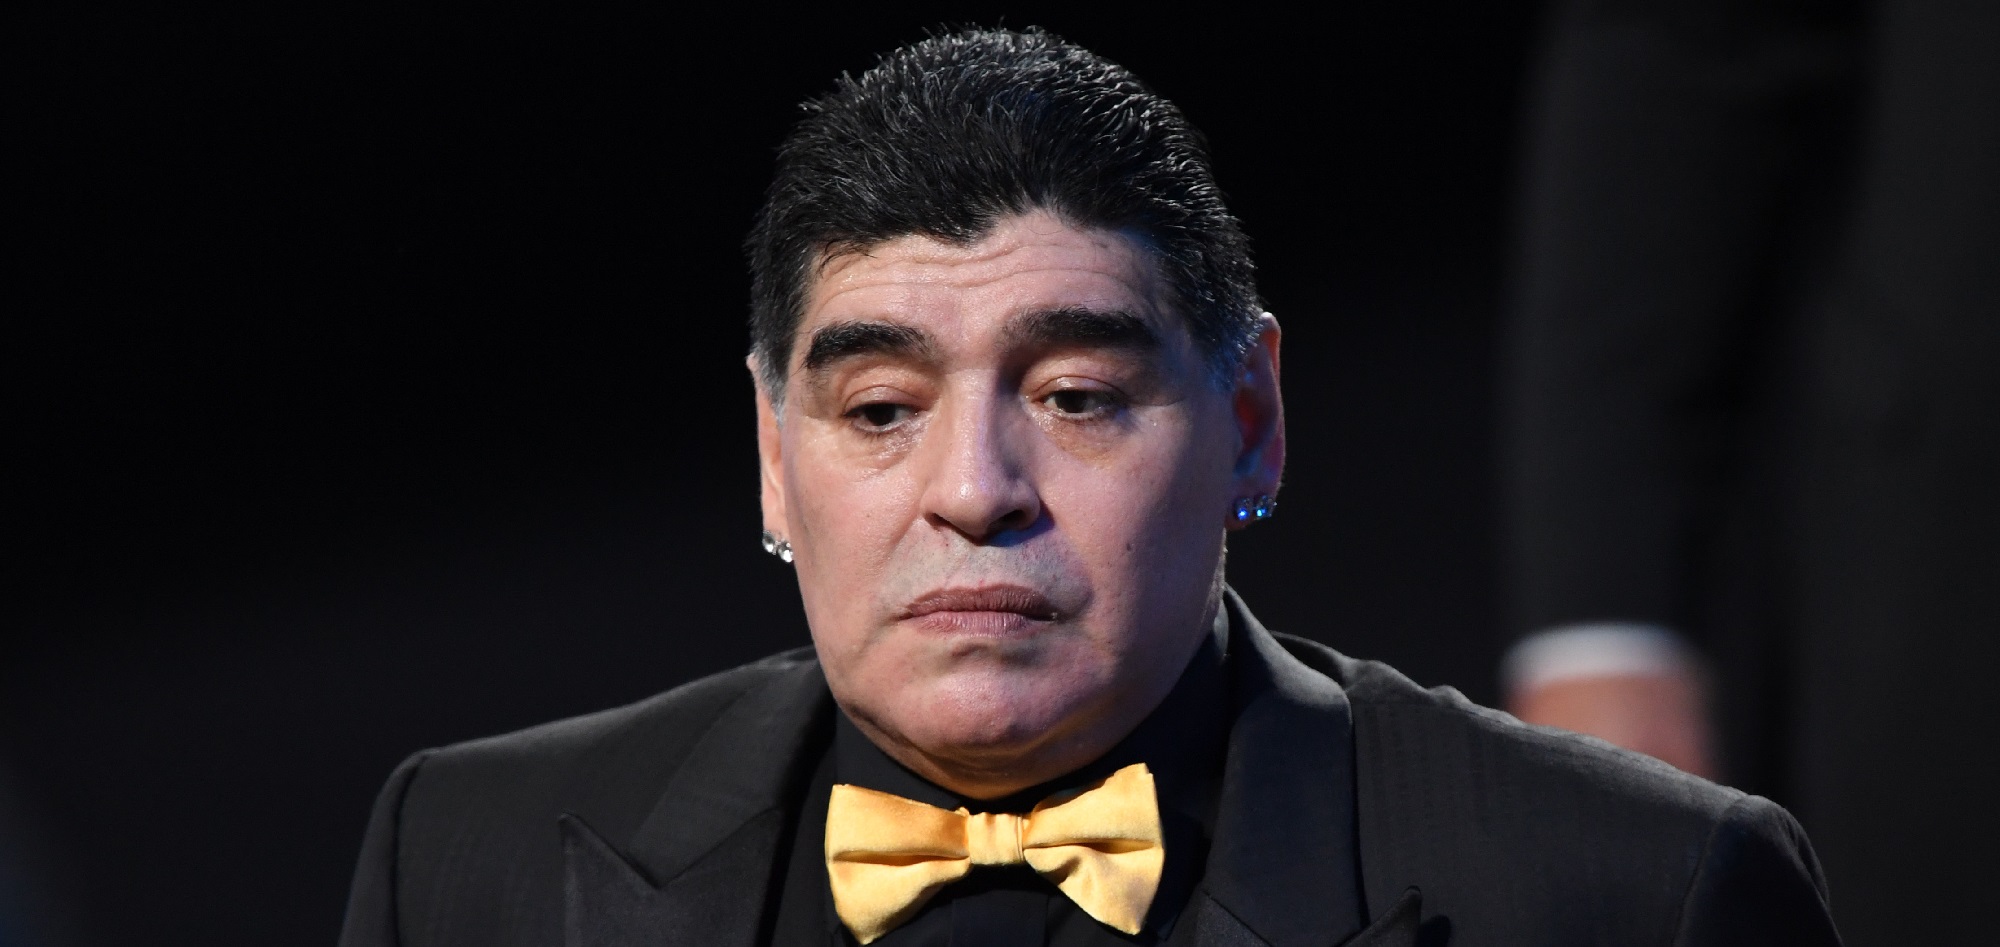 Los inicios, triunfos y polémicas de Maradona, el astro mundial que marcó al fútbol para siempre